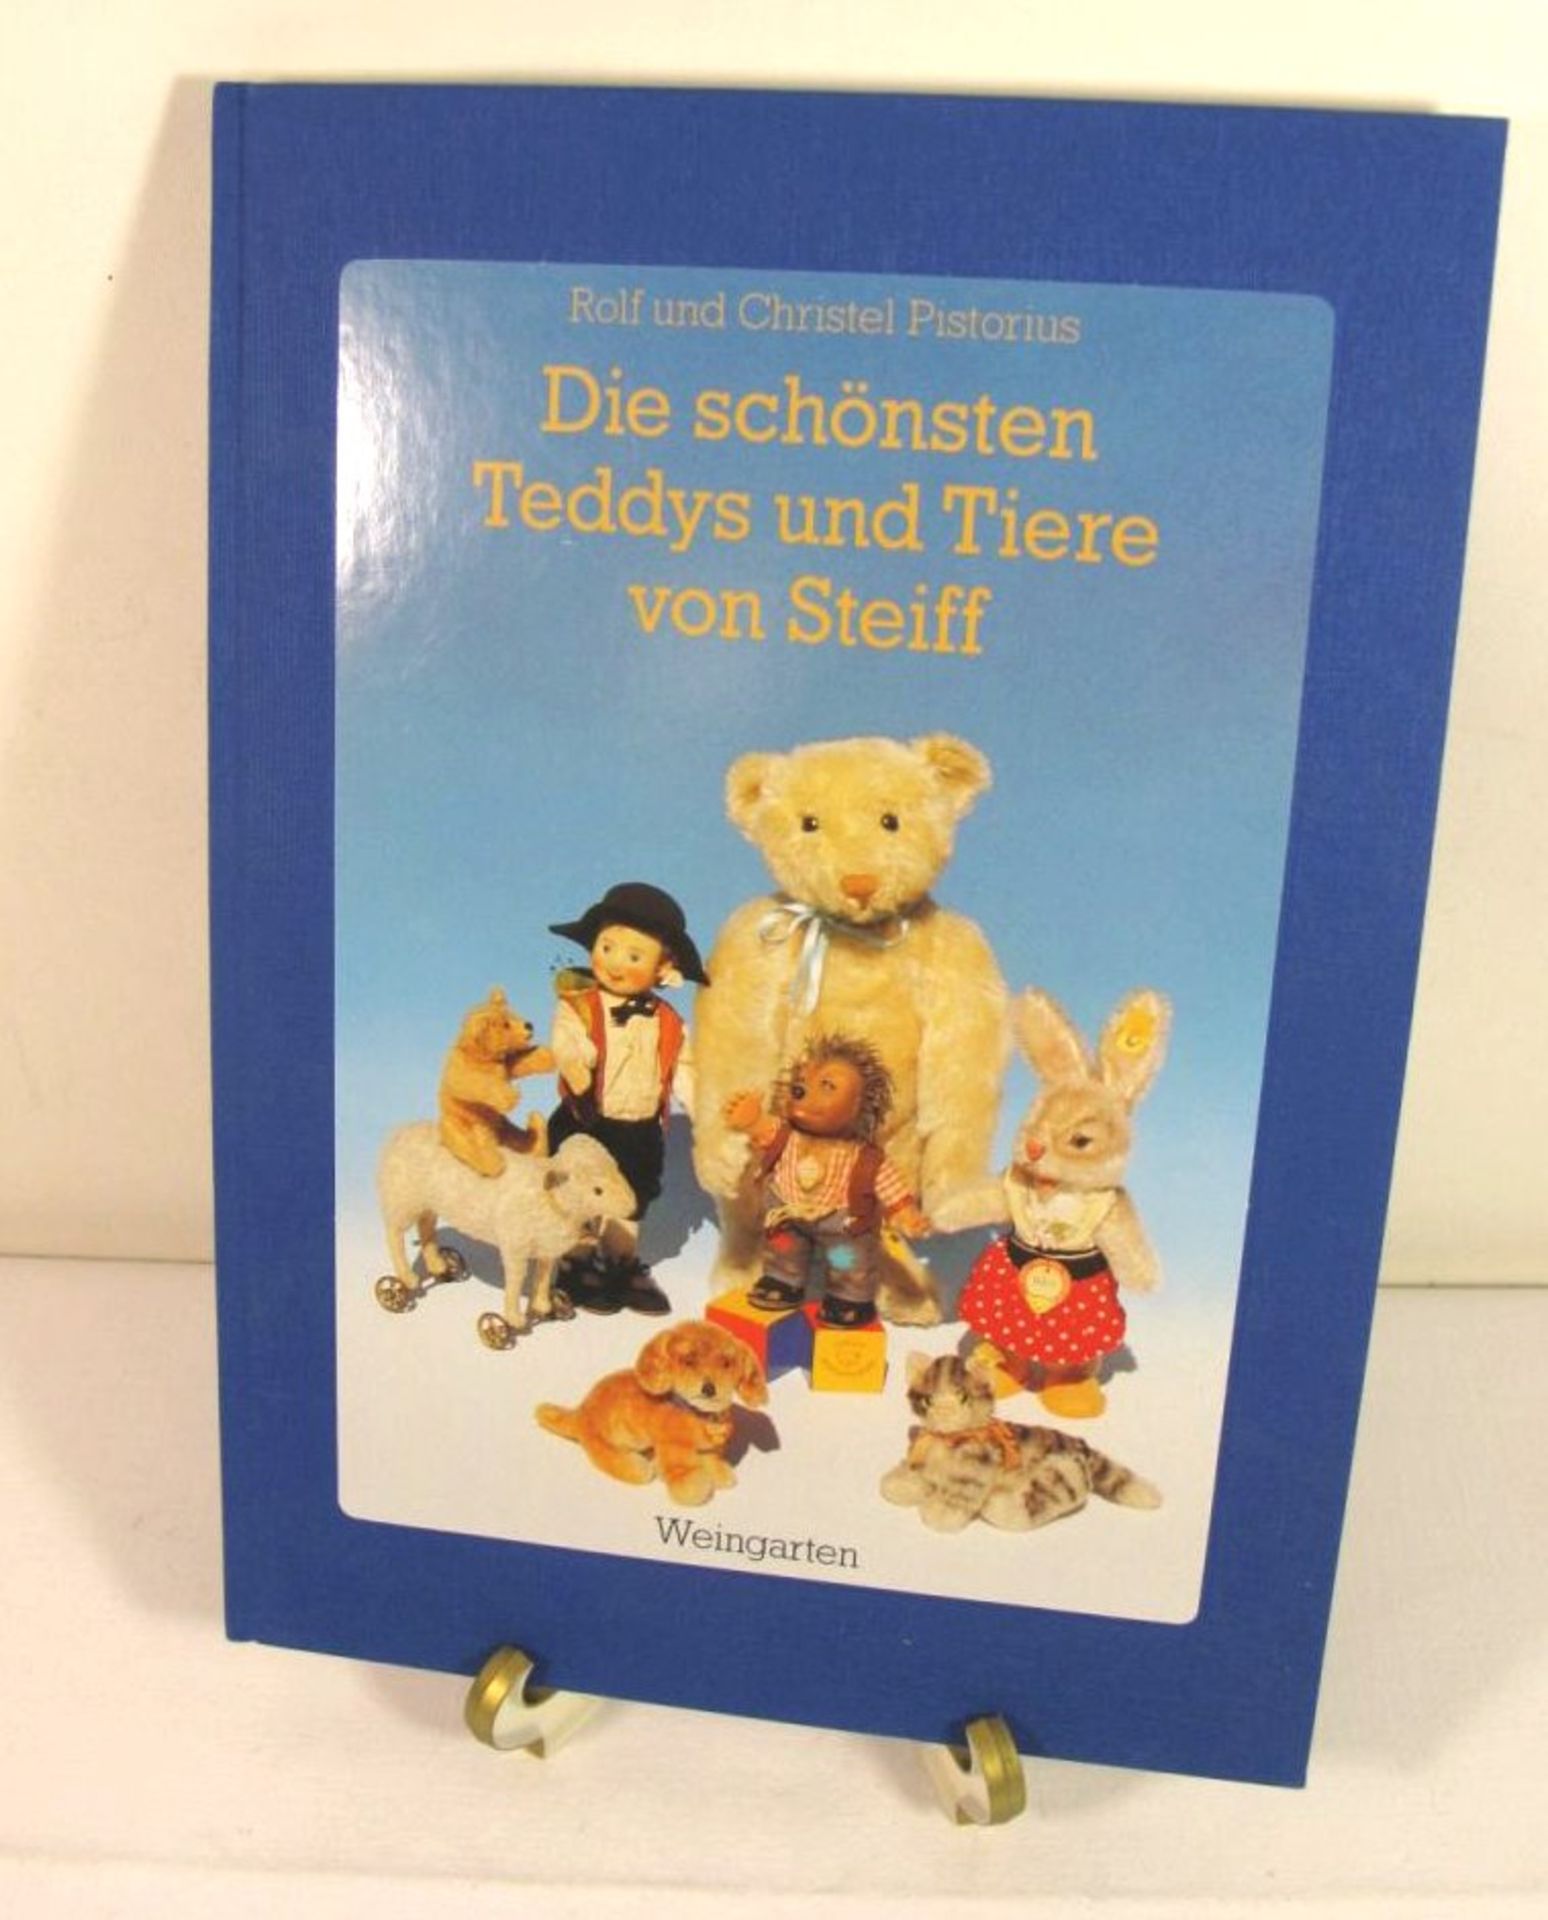 Die schönsten Teddy's und Tiere von Steiff, R. u.C. Pistorius, 1993.